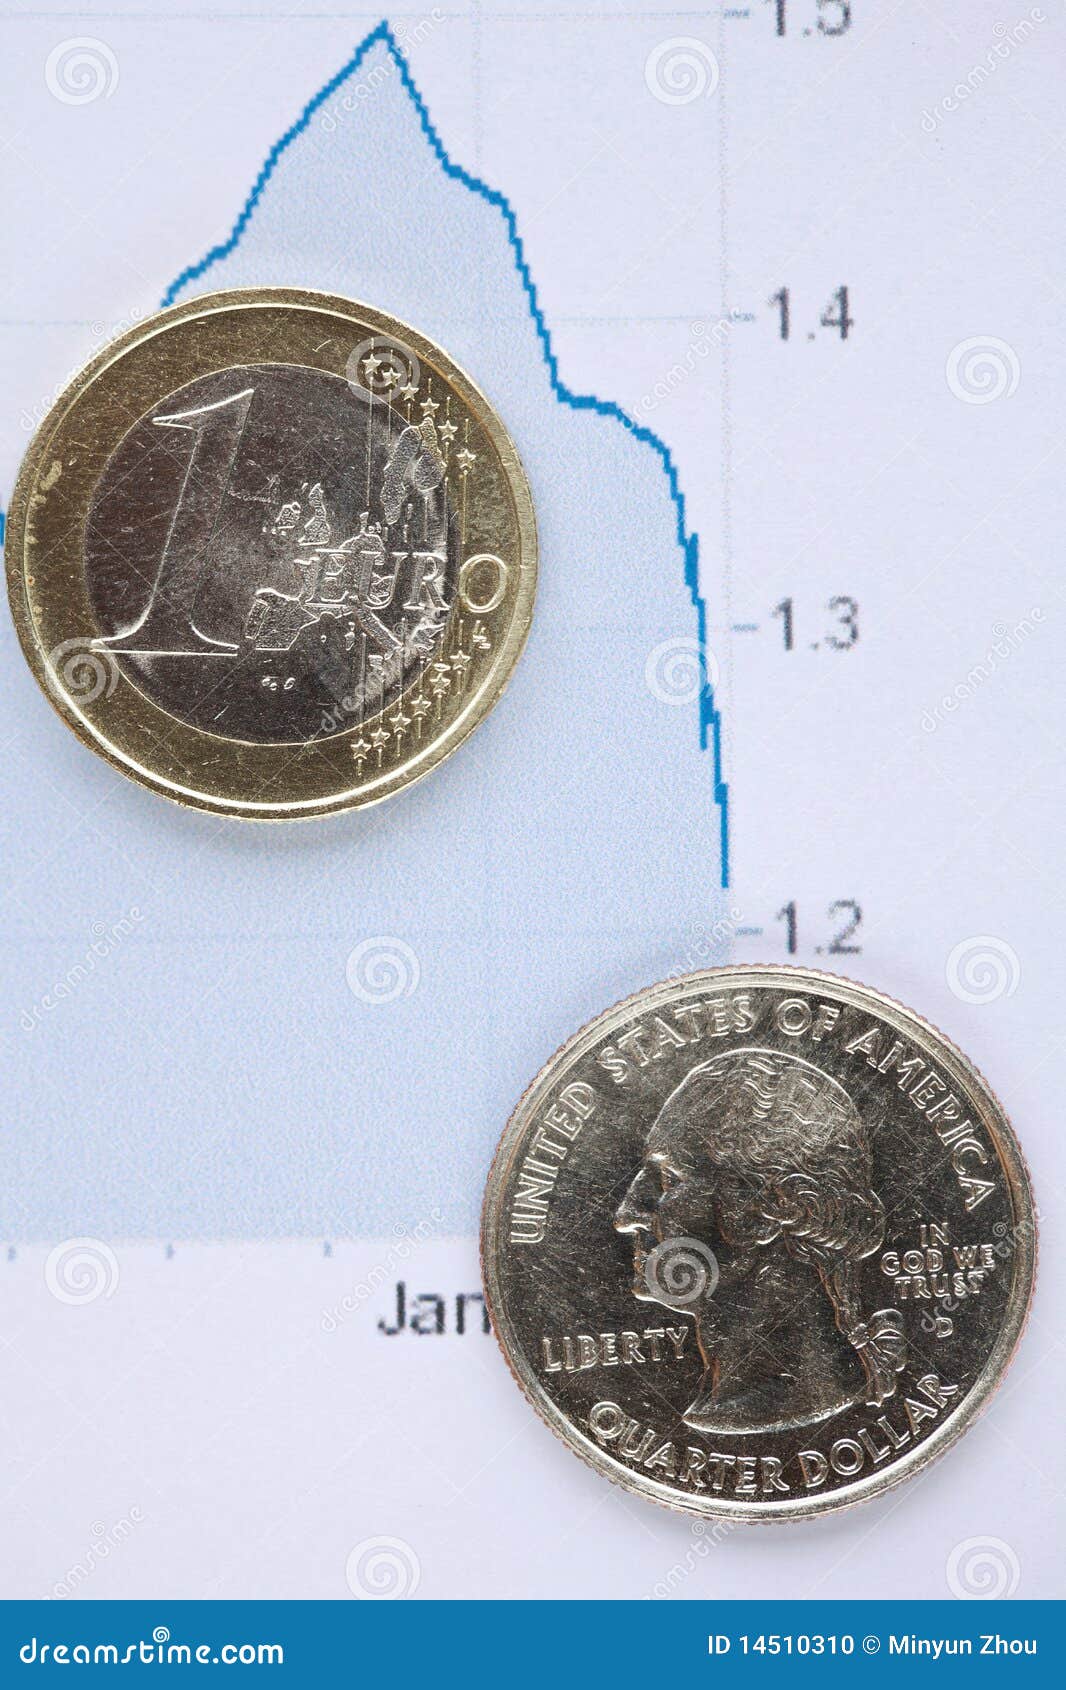 eur vs usd